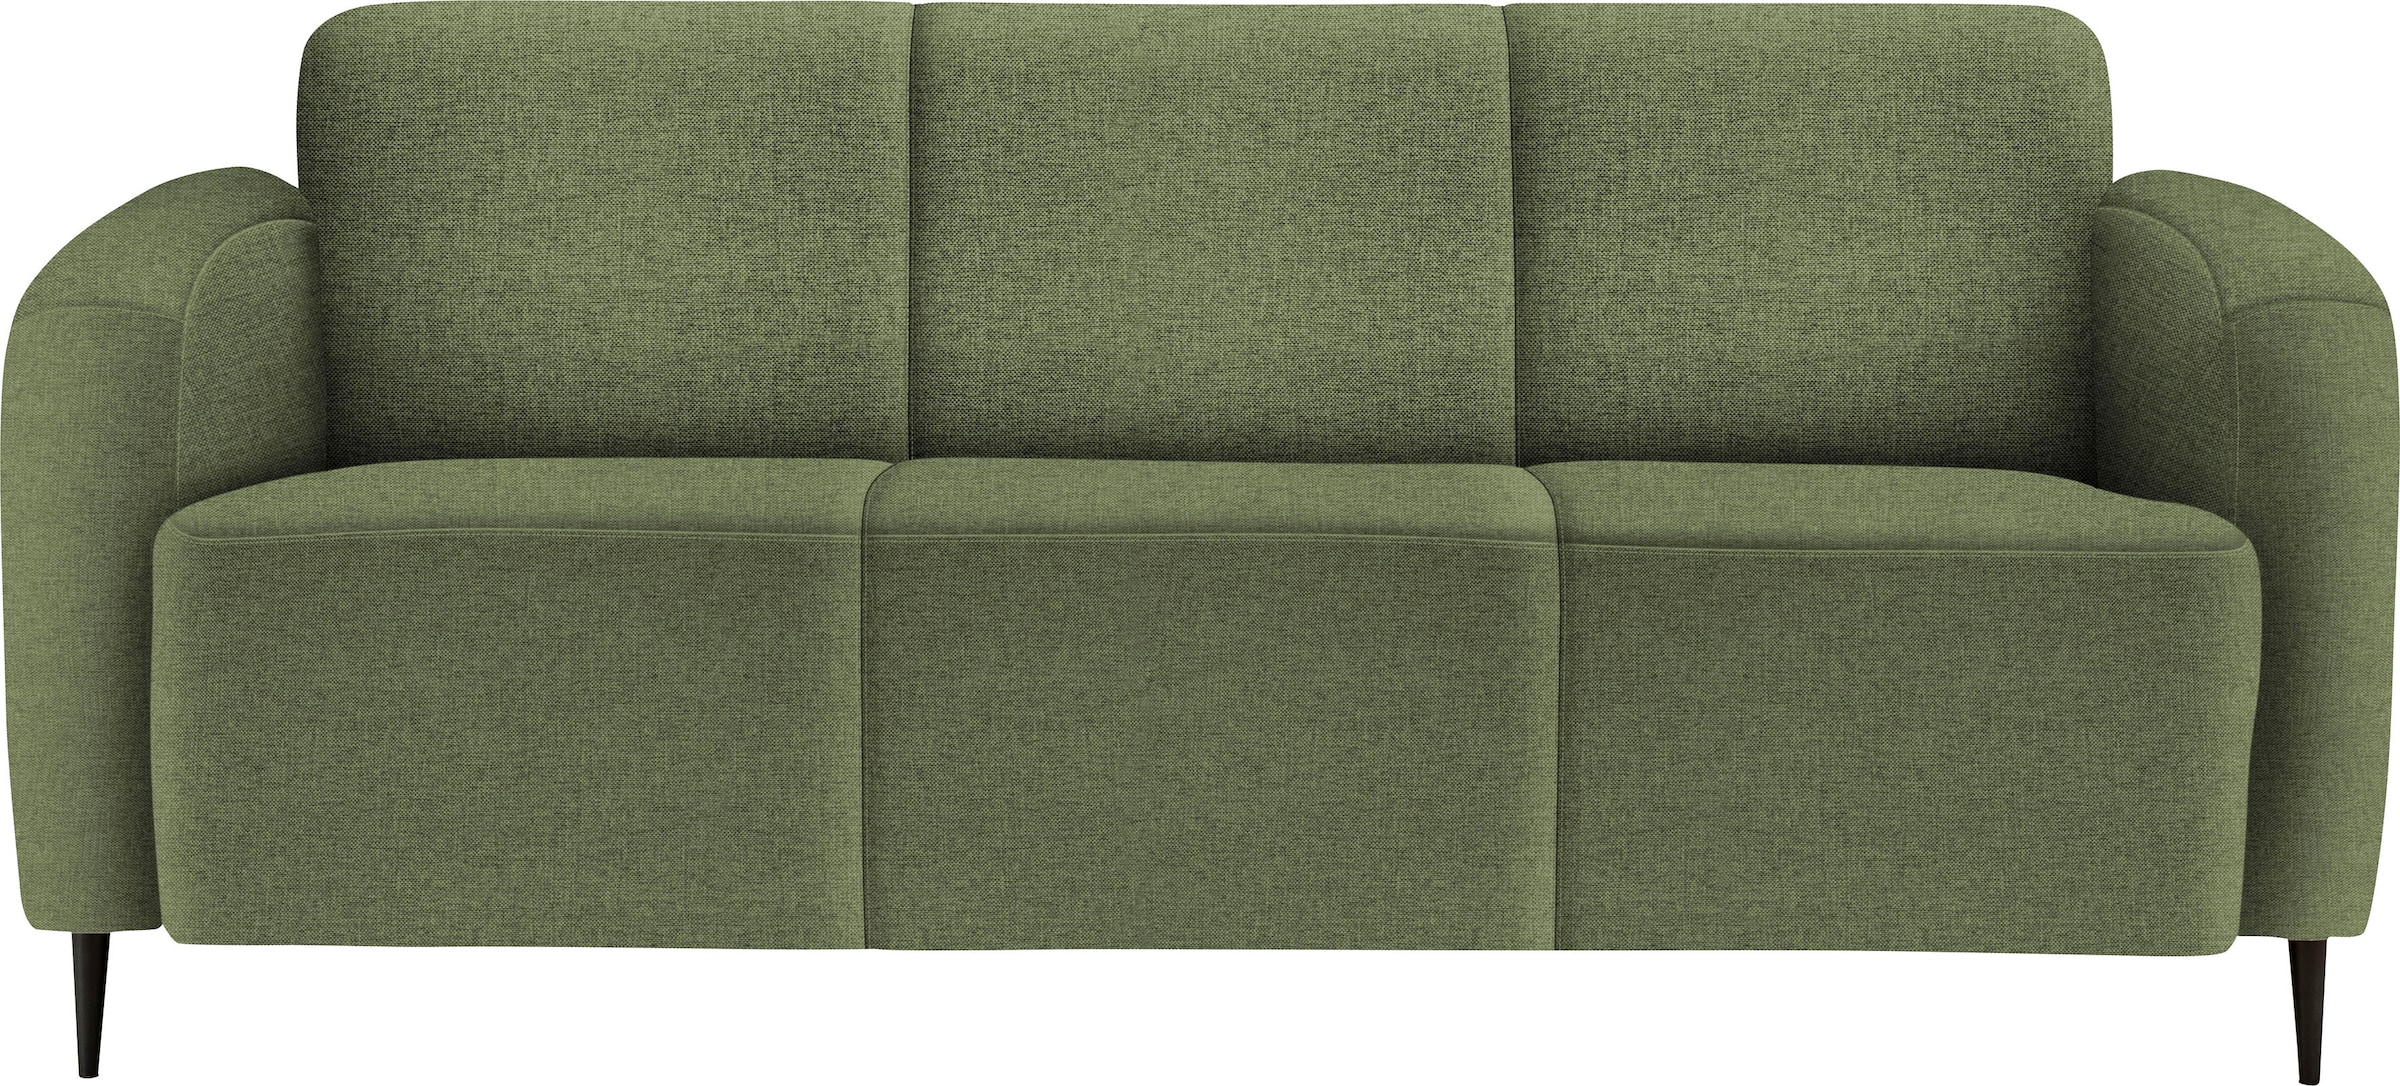 3-Sitzer-Sofa online bei Quelle kaufen